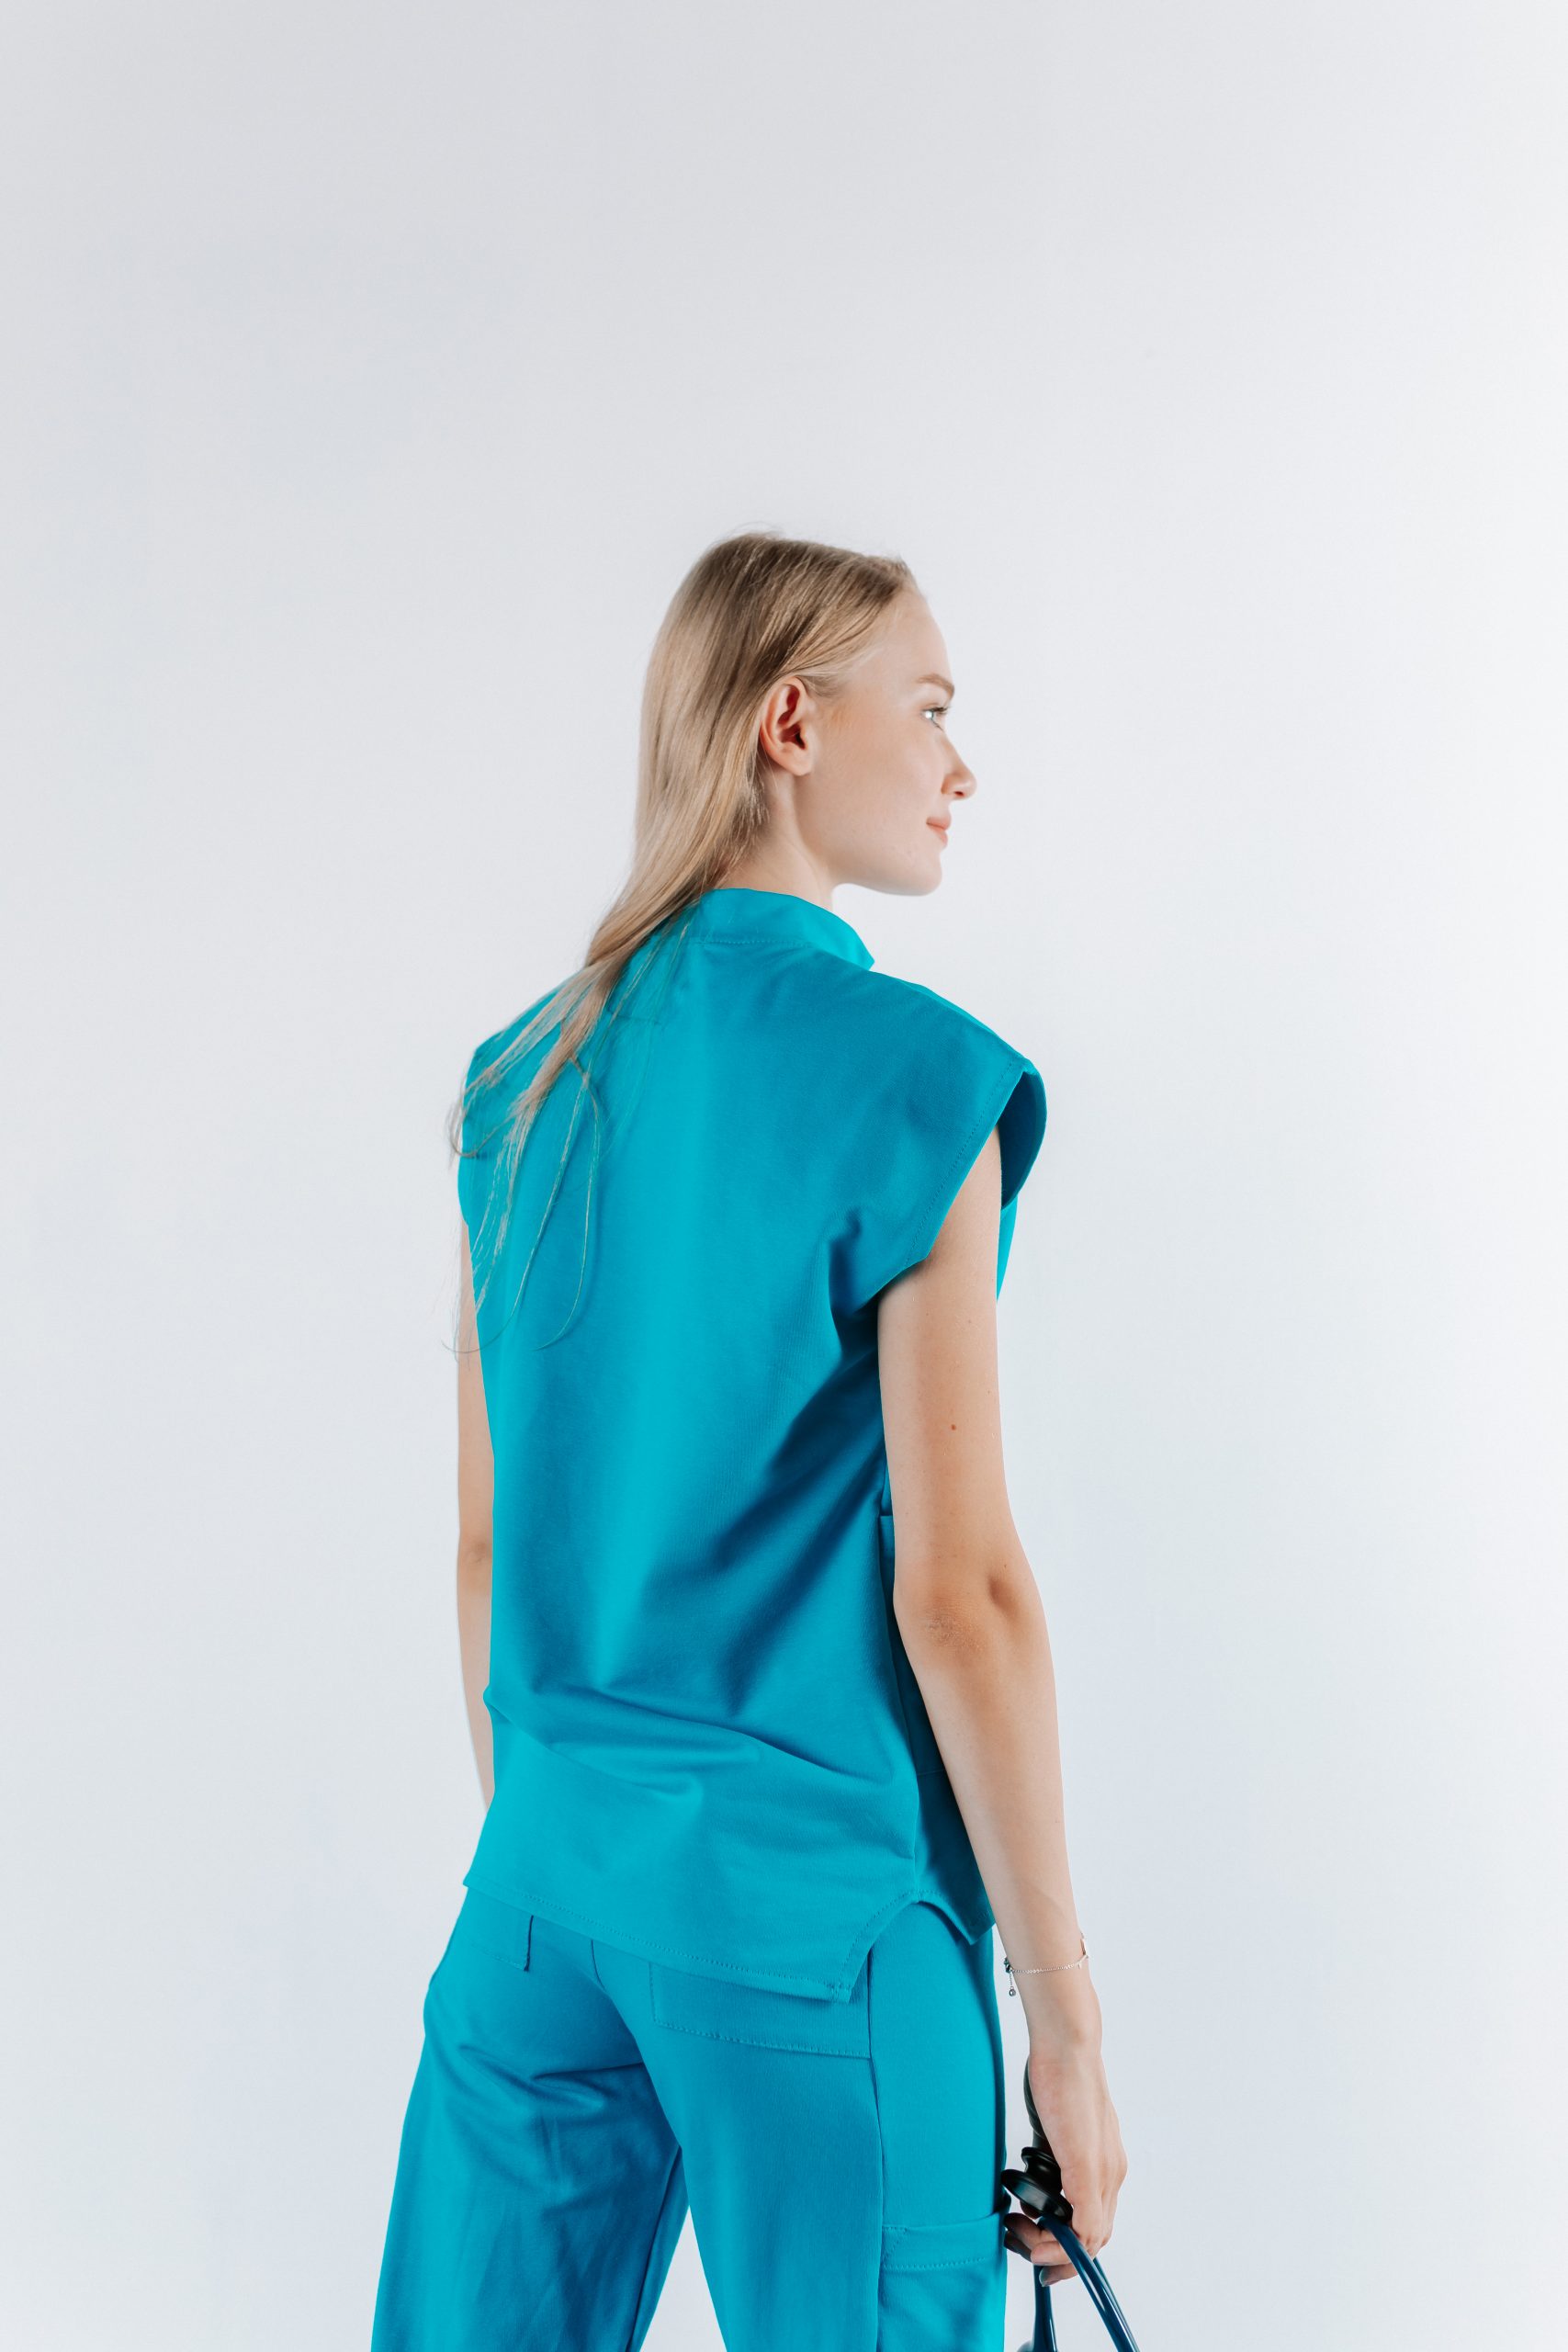 Vedere din spate a unei doamne doctor ce poarta o bluza tunica de scrub medical albastru azure.Uniforma medicala albastru azure este din bumbac 95% si elastan 5% cu croiala fit.